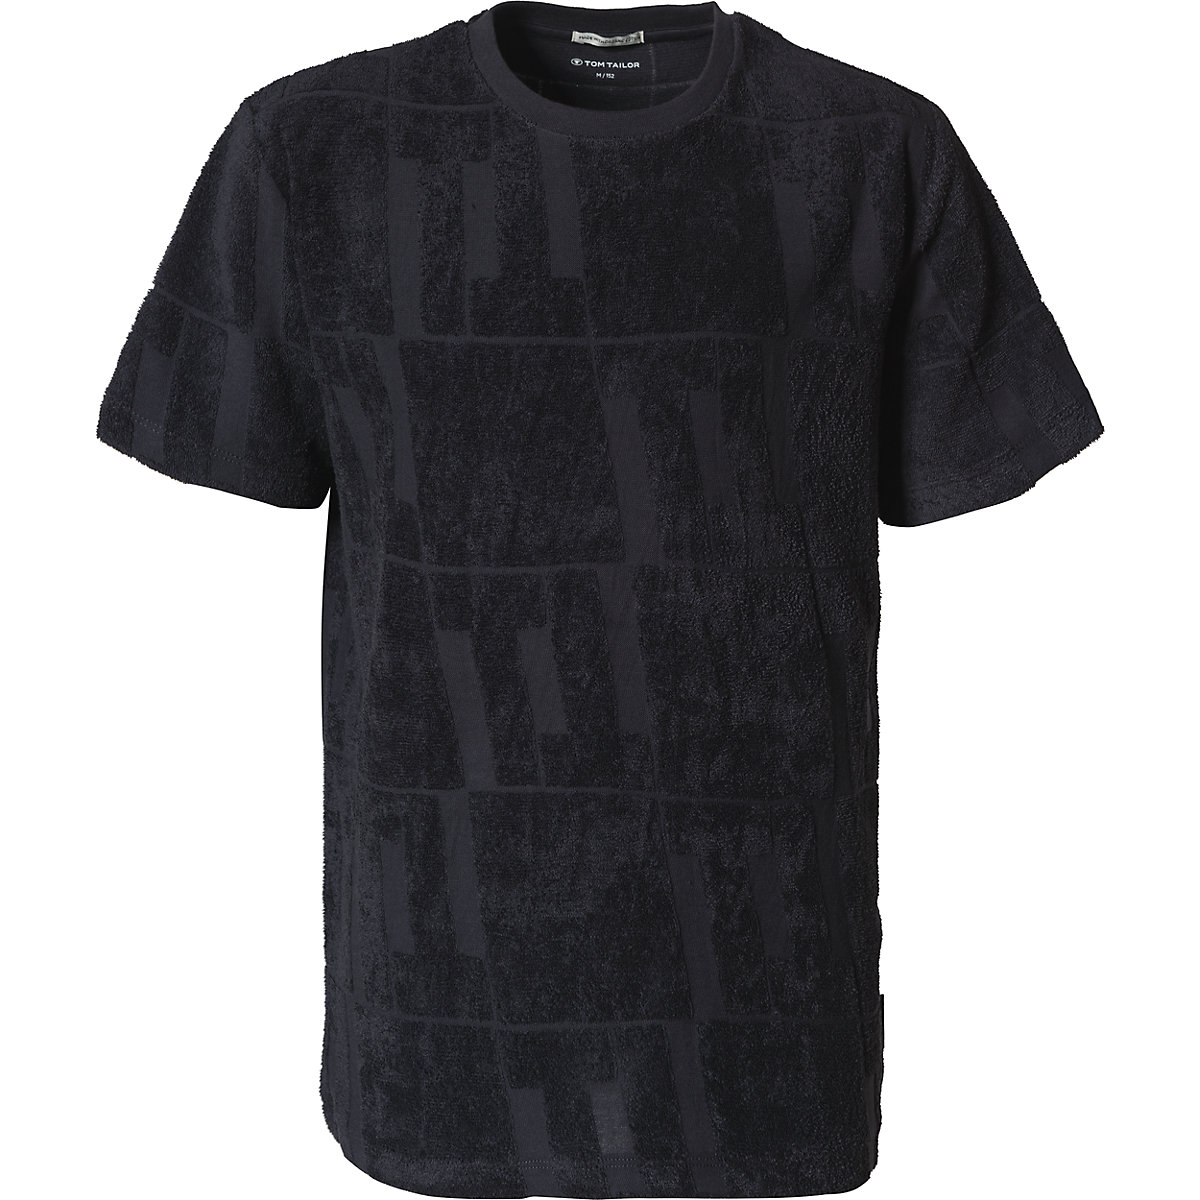 TOM TAILOR T-Shirt für Jungen dunkelgrau